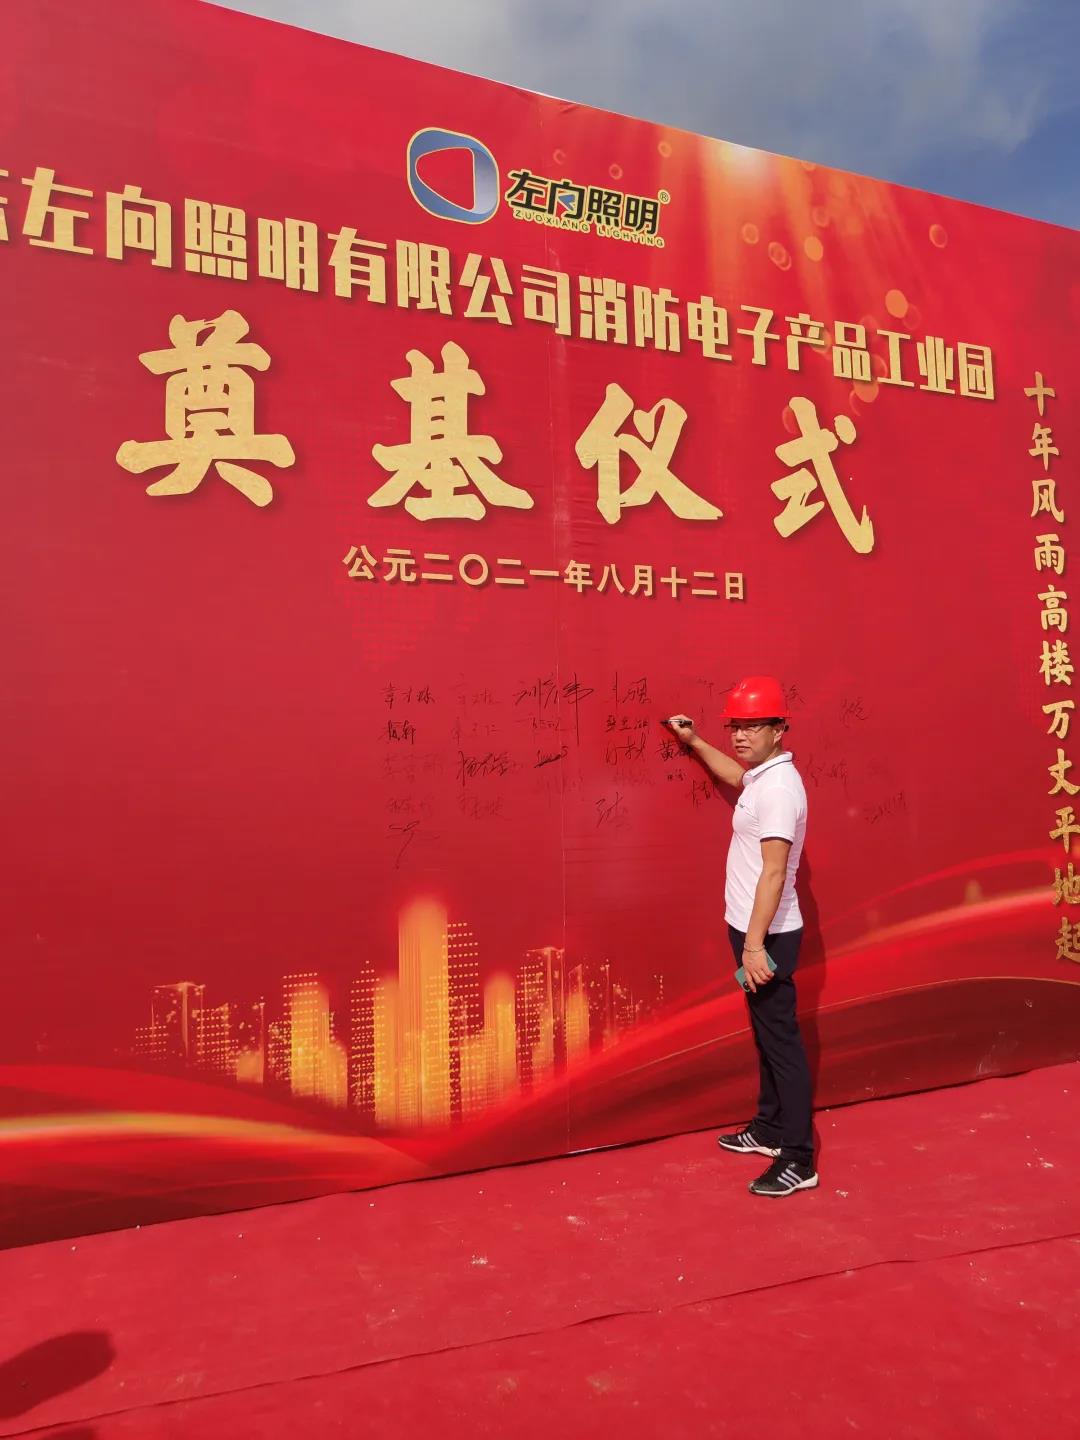 广东左向照明有限公司消防电子产品工业园奠基仪式